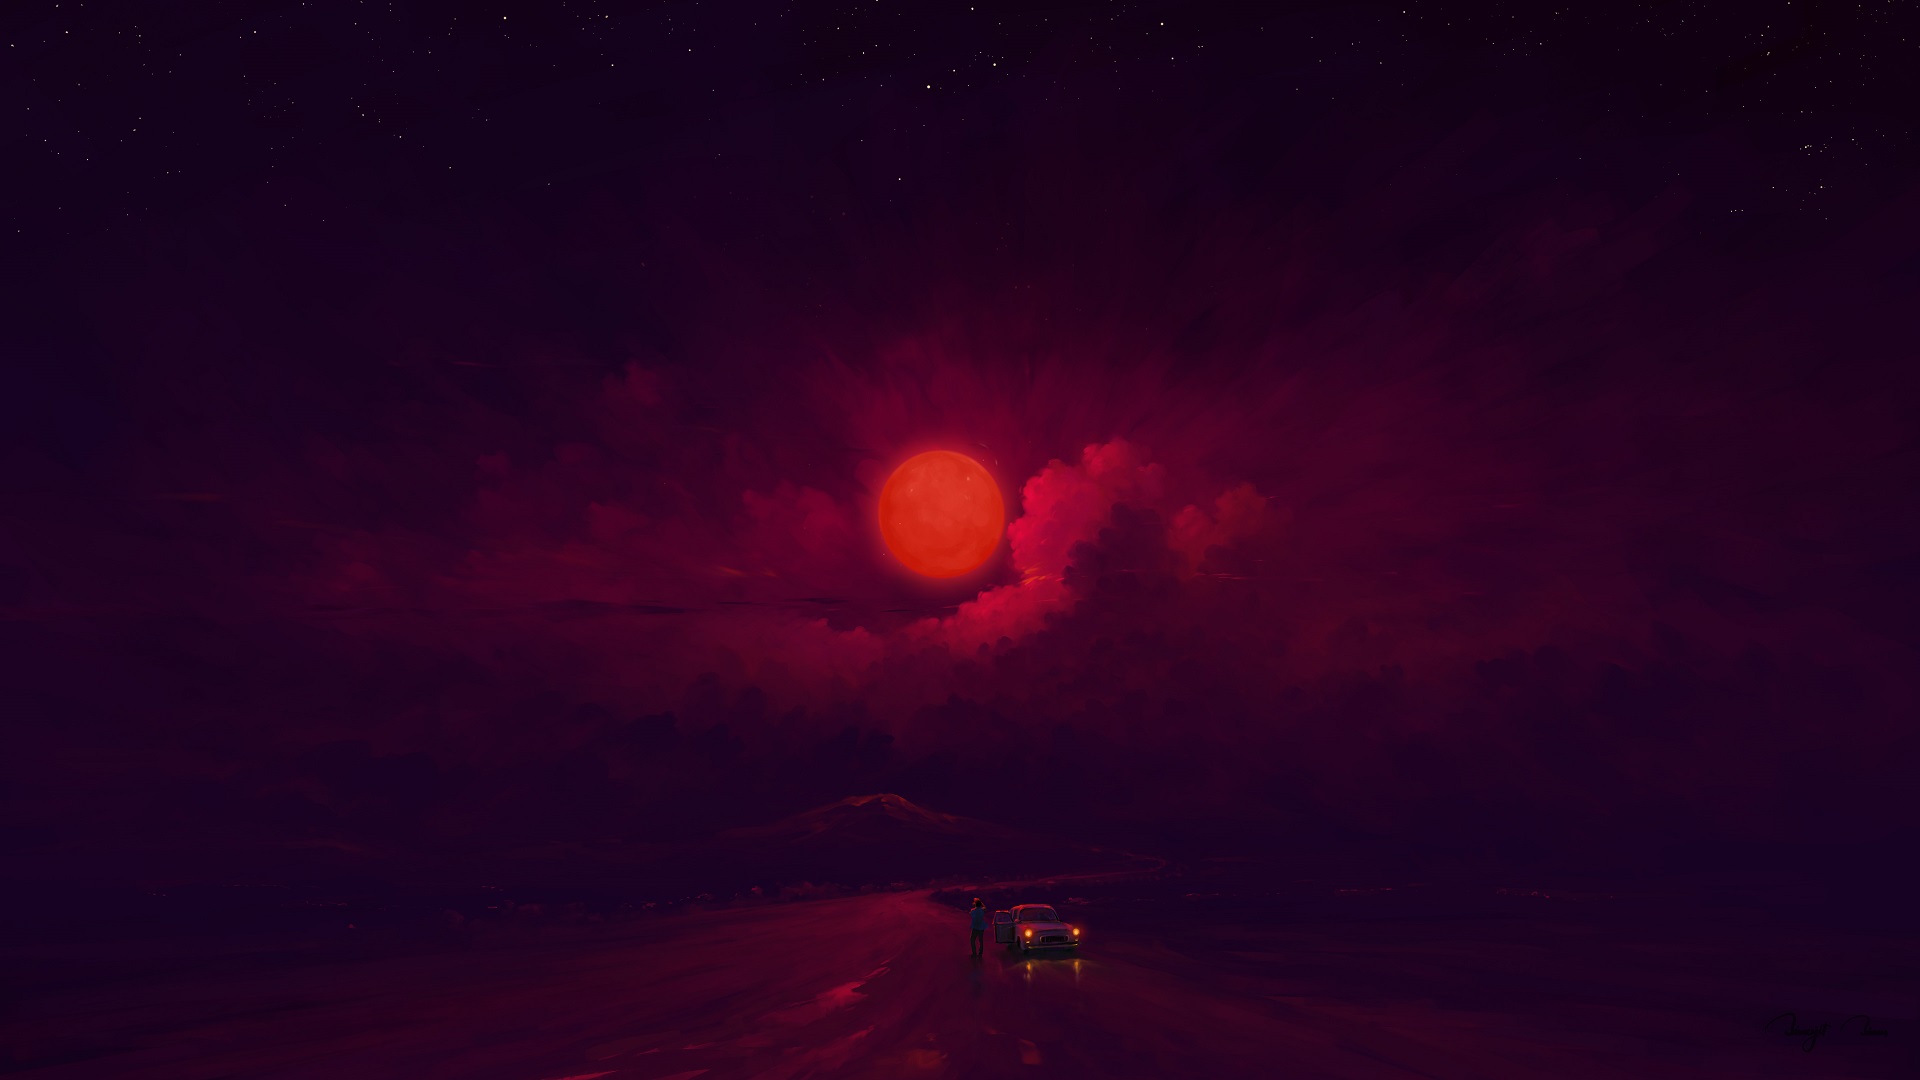 General 1920x1080 digital painting red moon night sky clouds BisBiswas